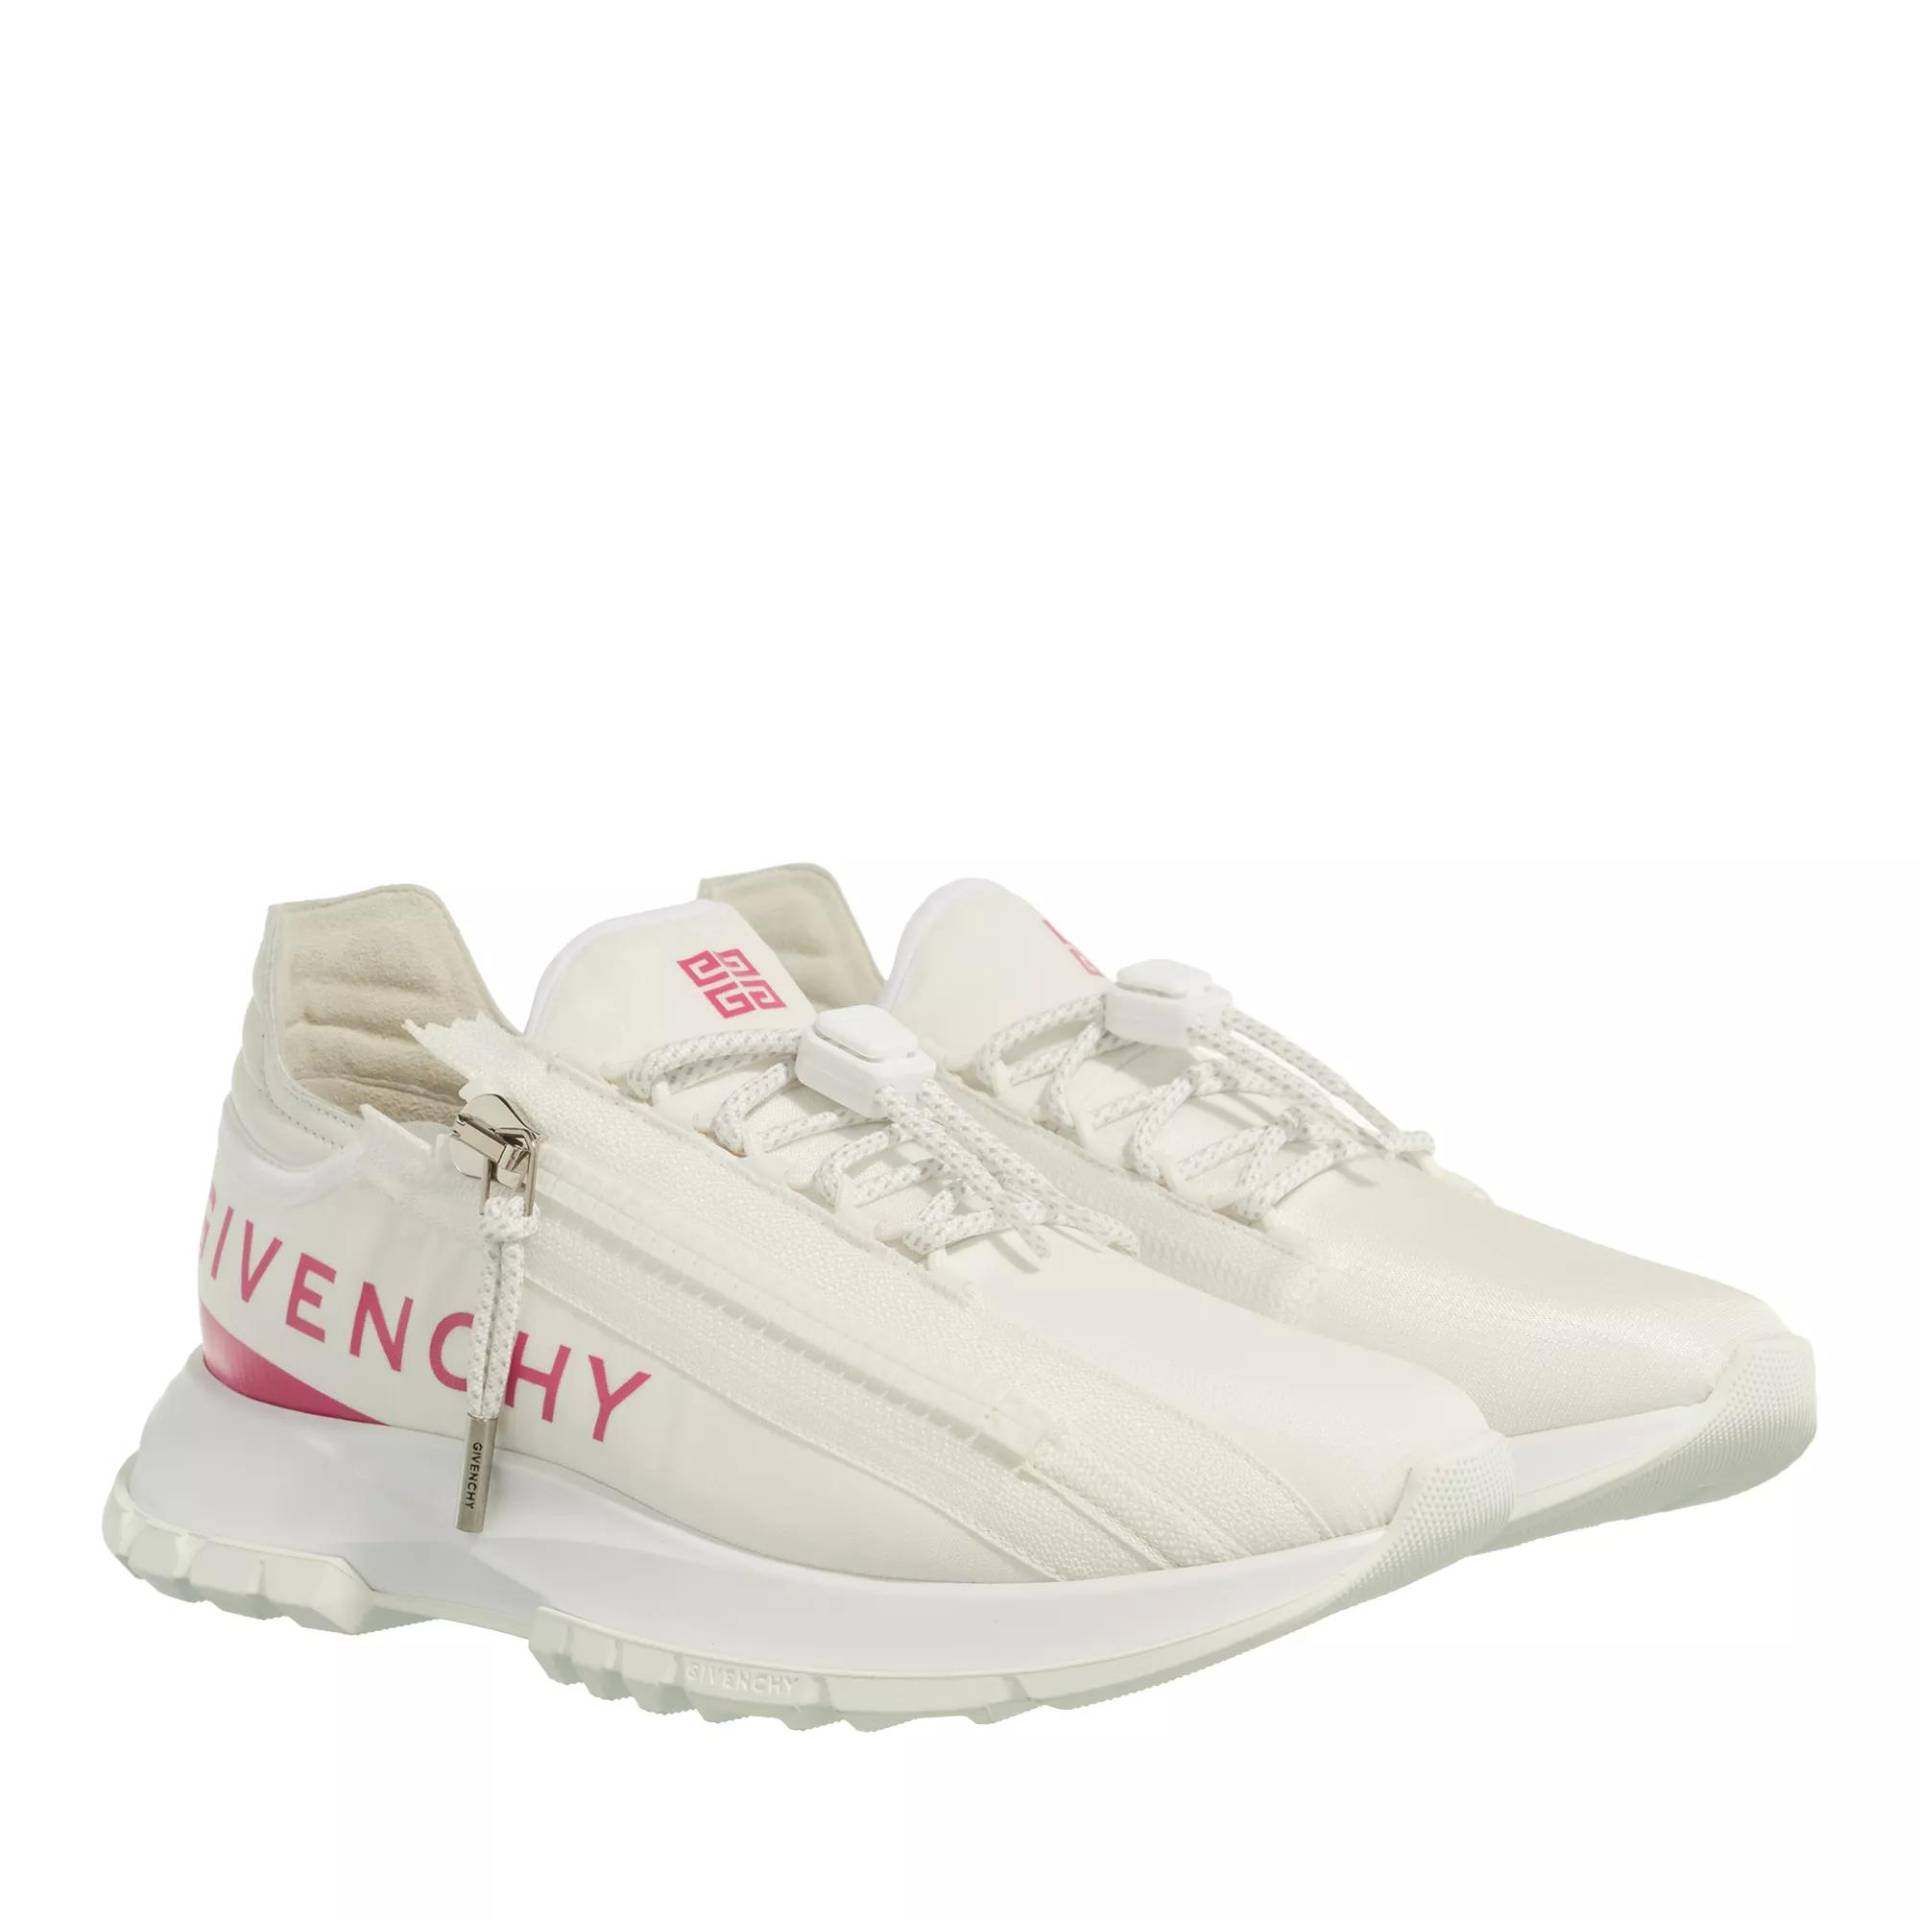 Givenchy Sneakers - Sneaker - Gr. 39 (EU) - in Creme - für Damen von Givenchy